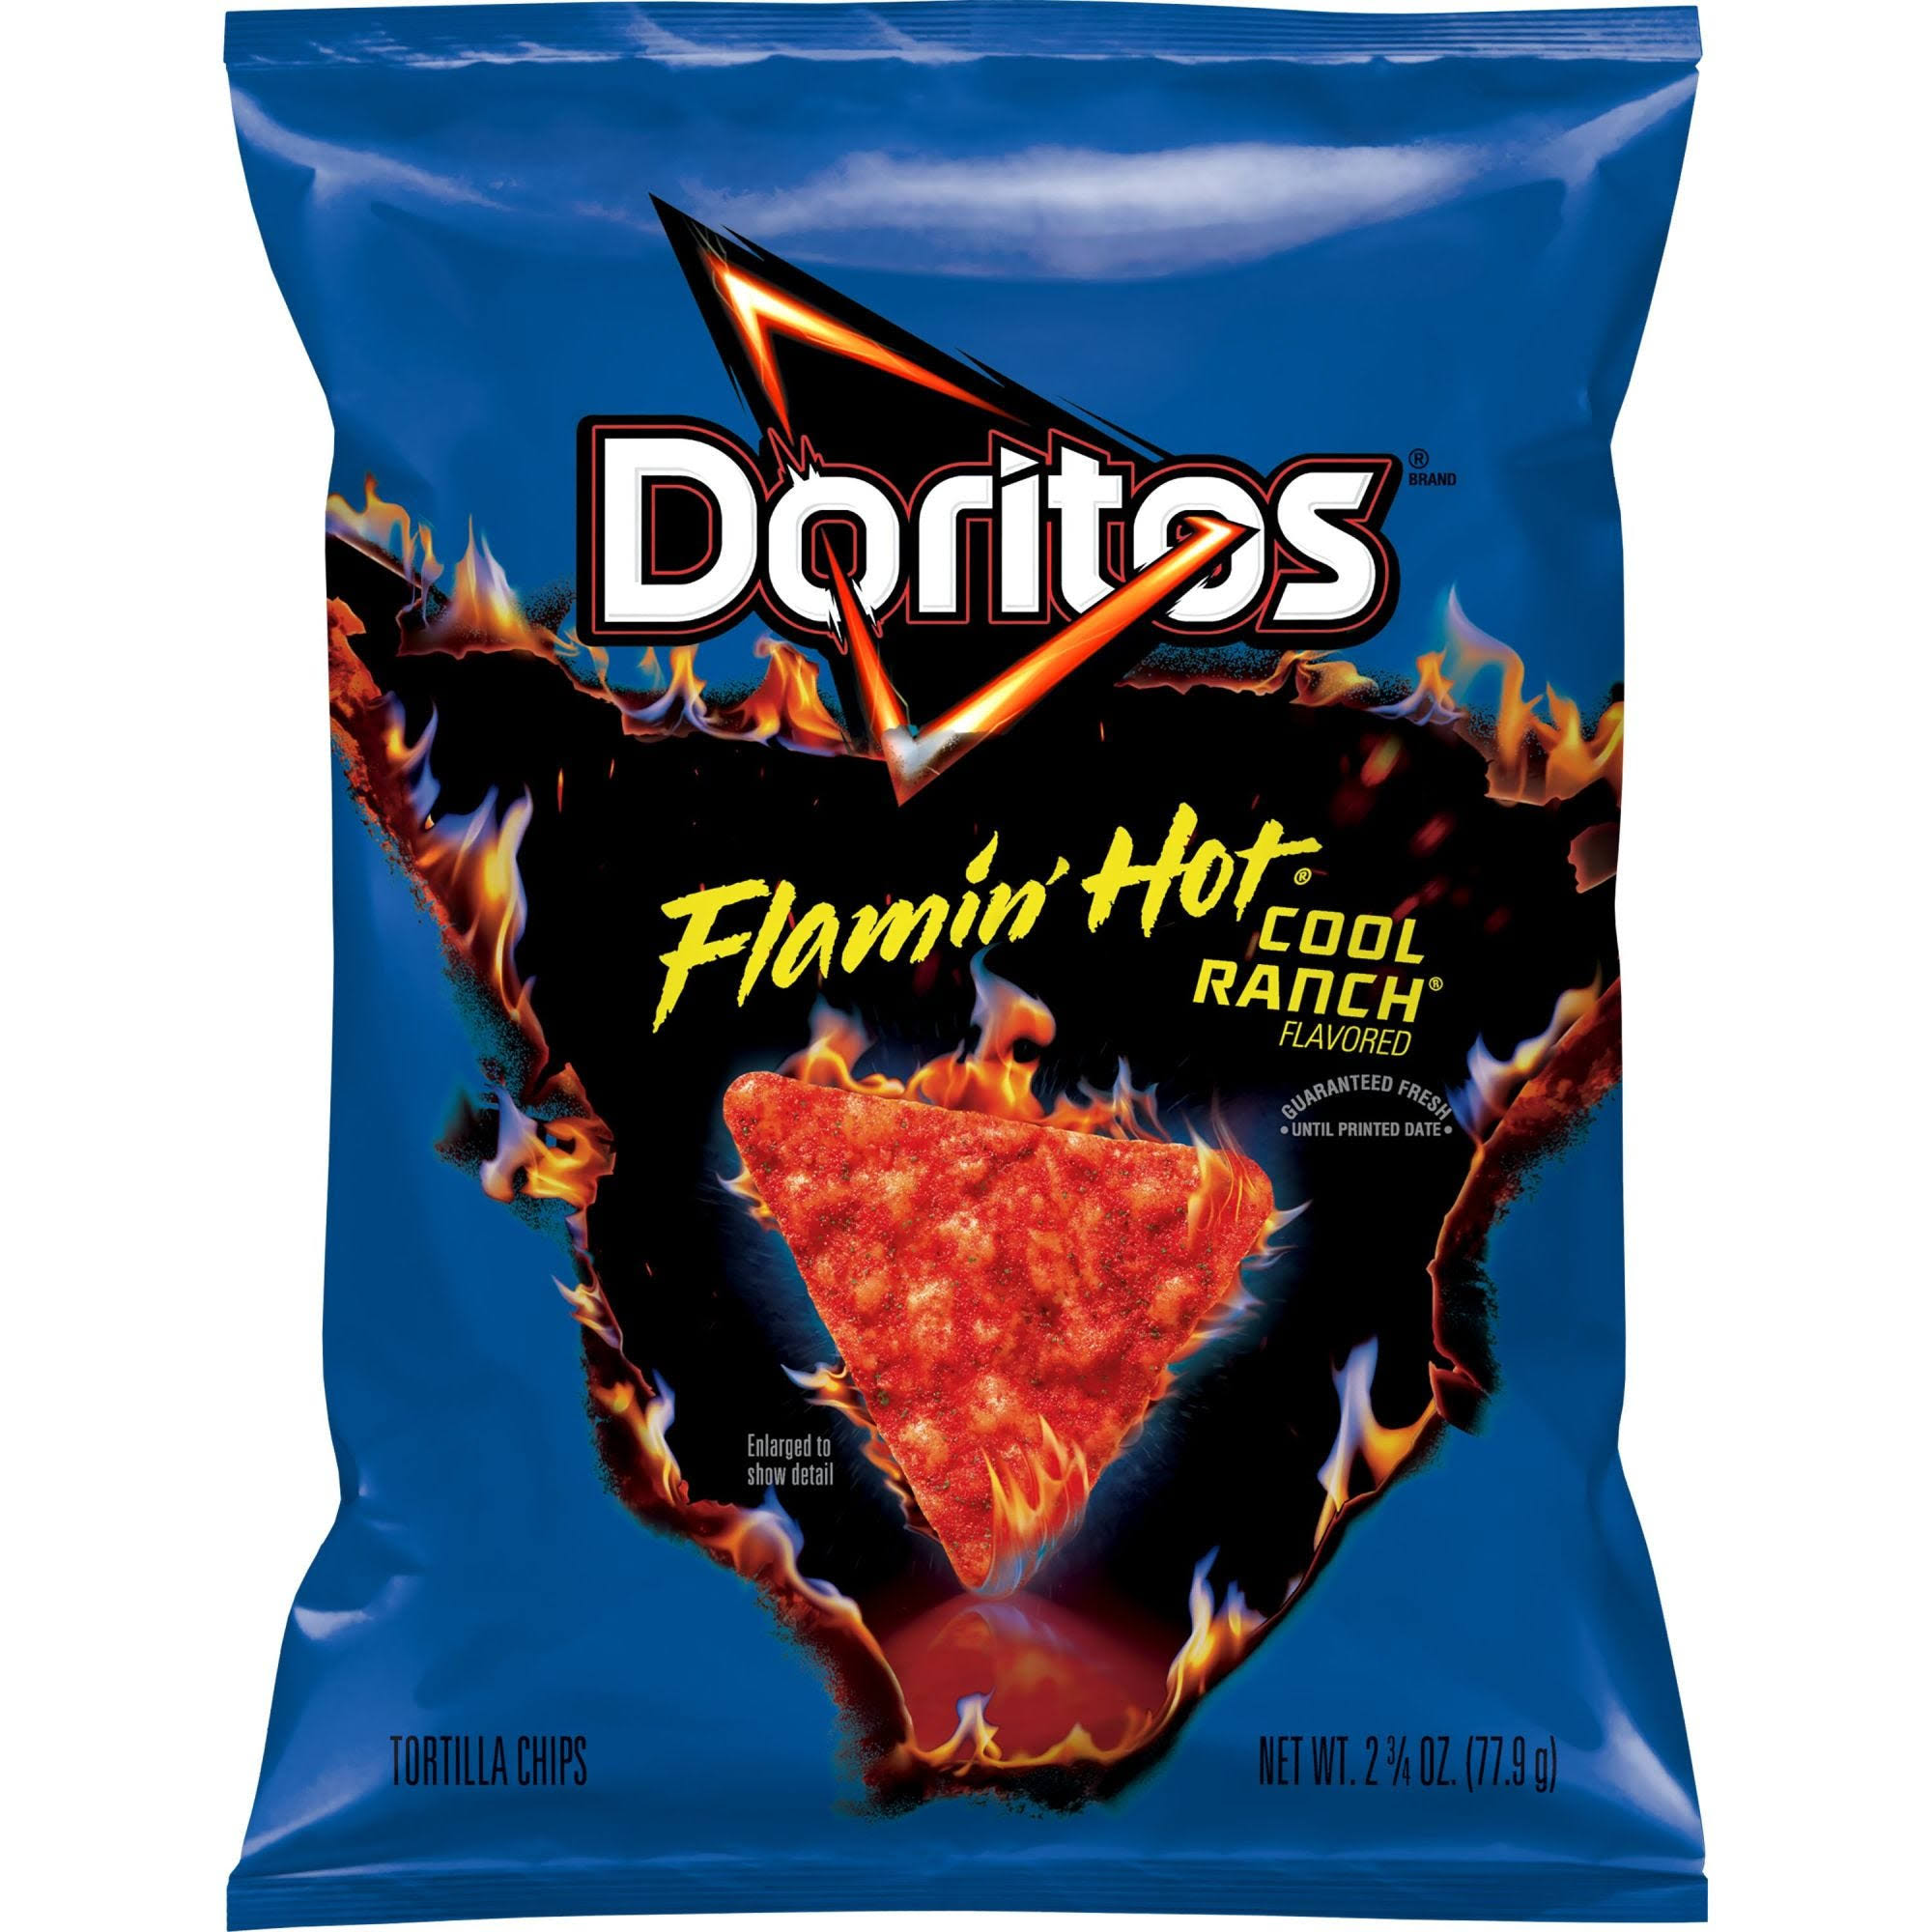 Doritos Flamin Hot Cool Ranch - 2.75oz